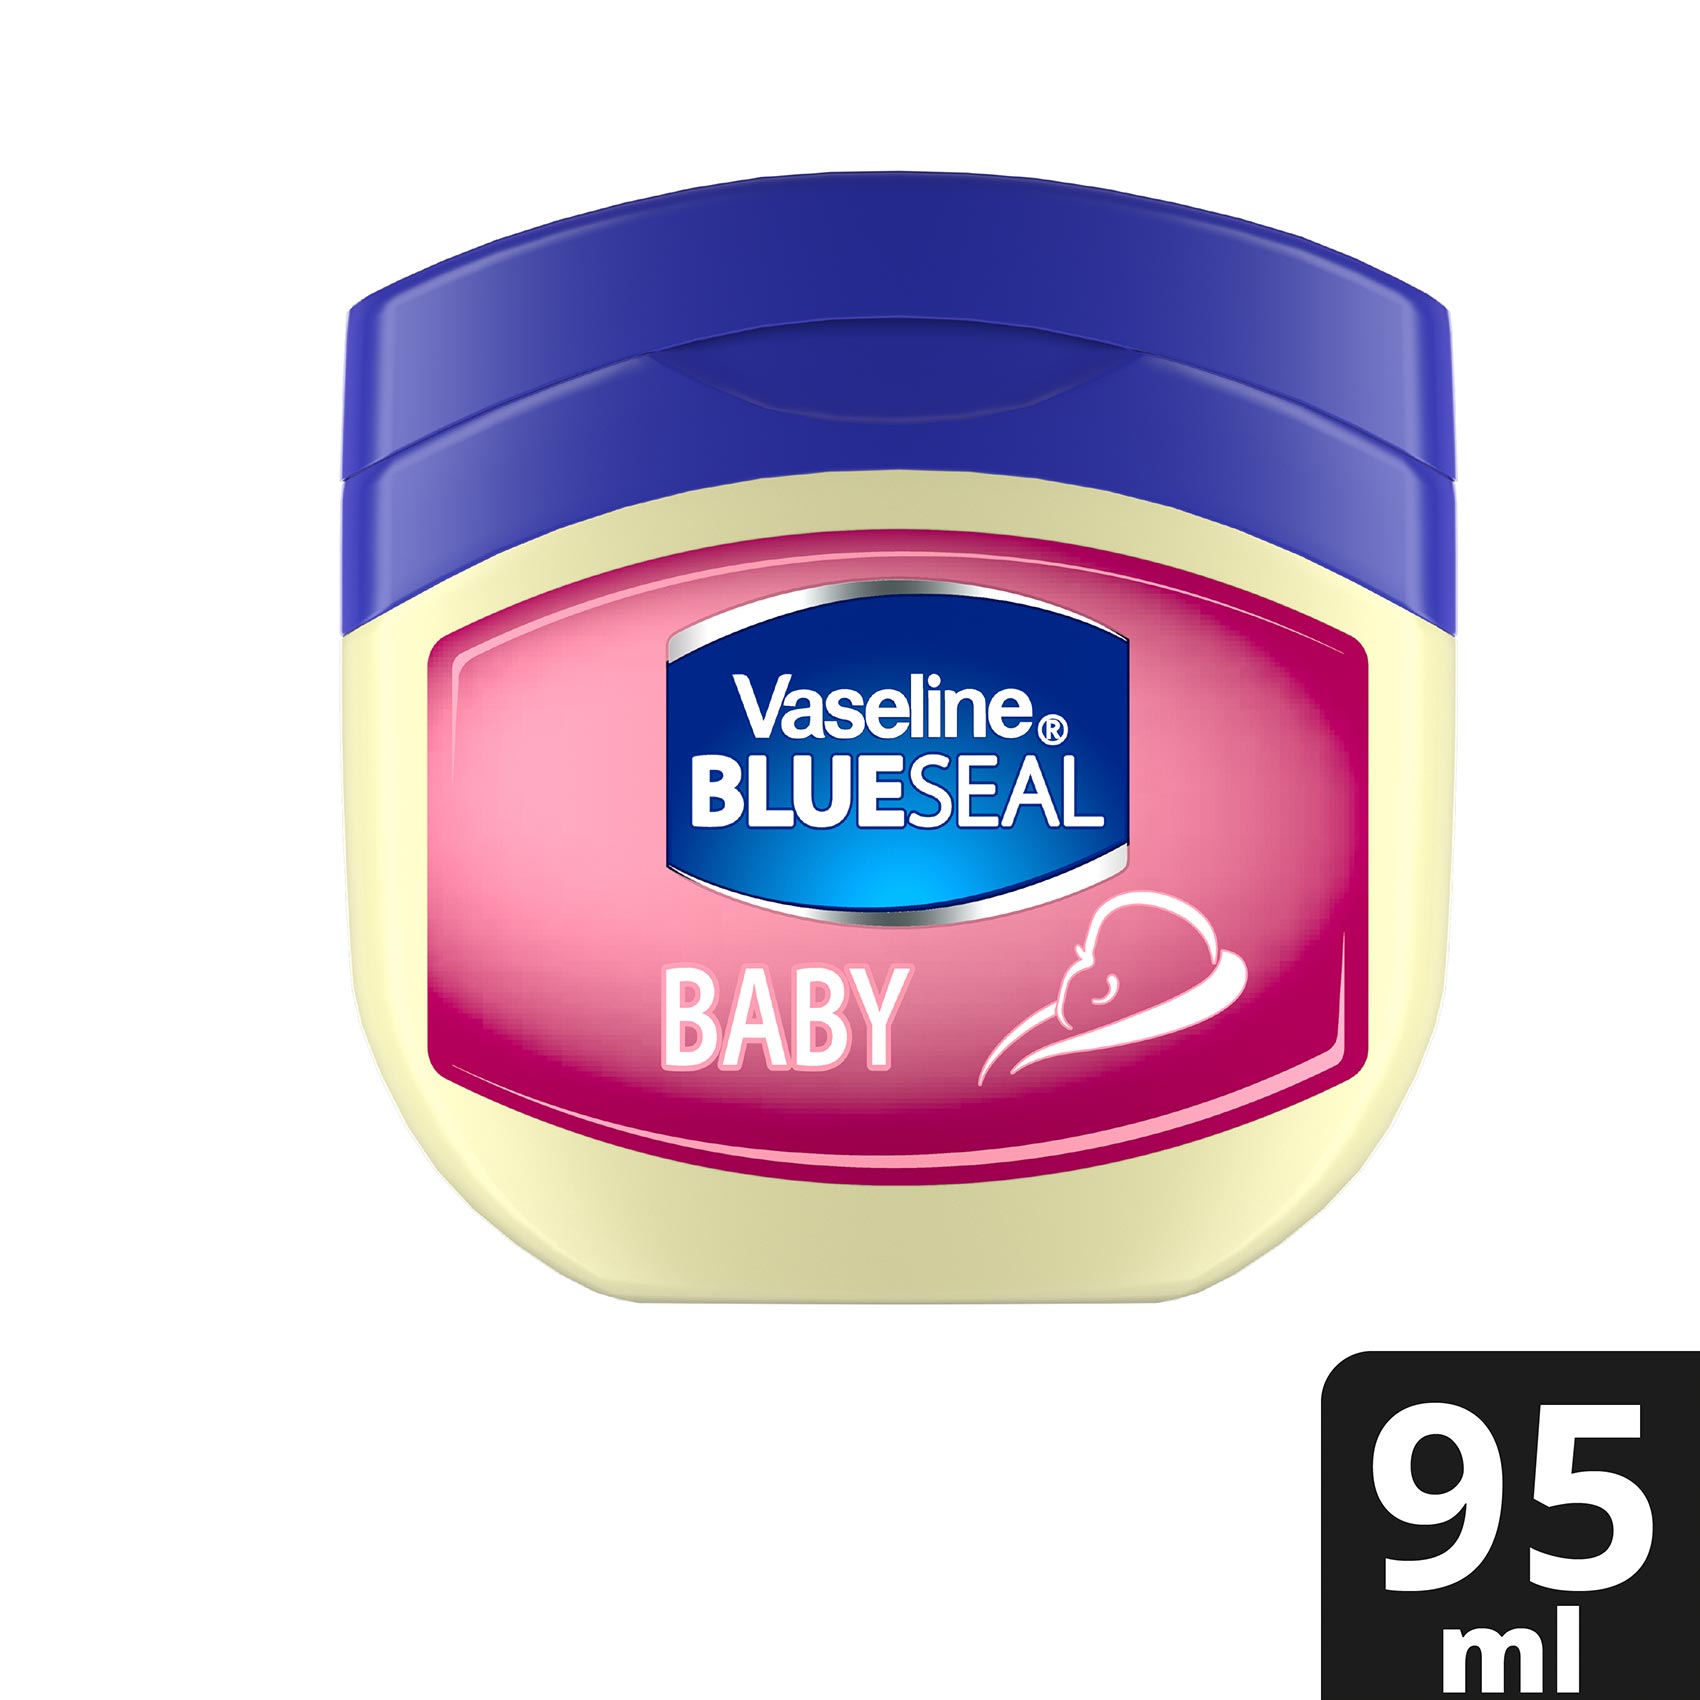 Vaseline Baby Petroleum Jelly 100ml